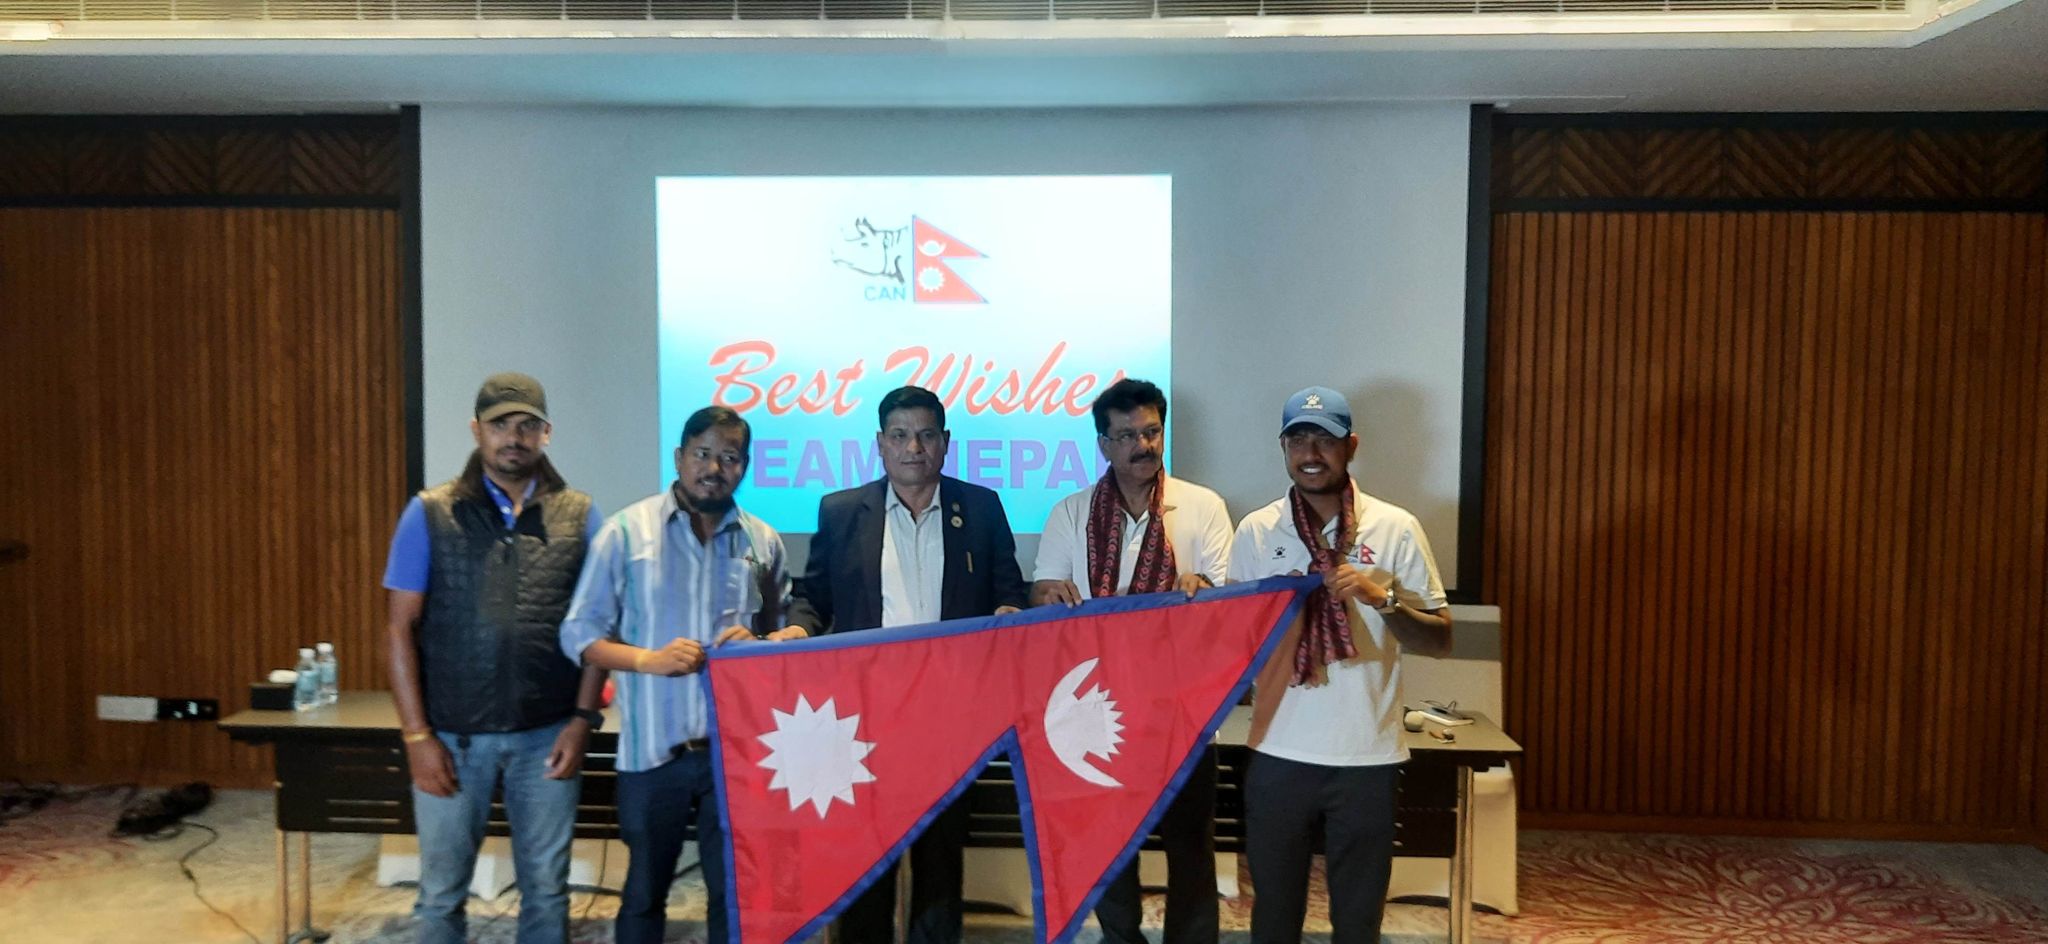 केन्या जाँदै नेपाली क्रिकेट टोली, 'प्रदर्शन निखार्ने अवसर'